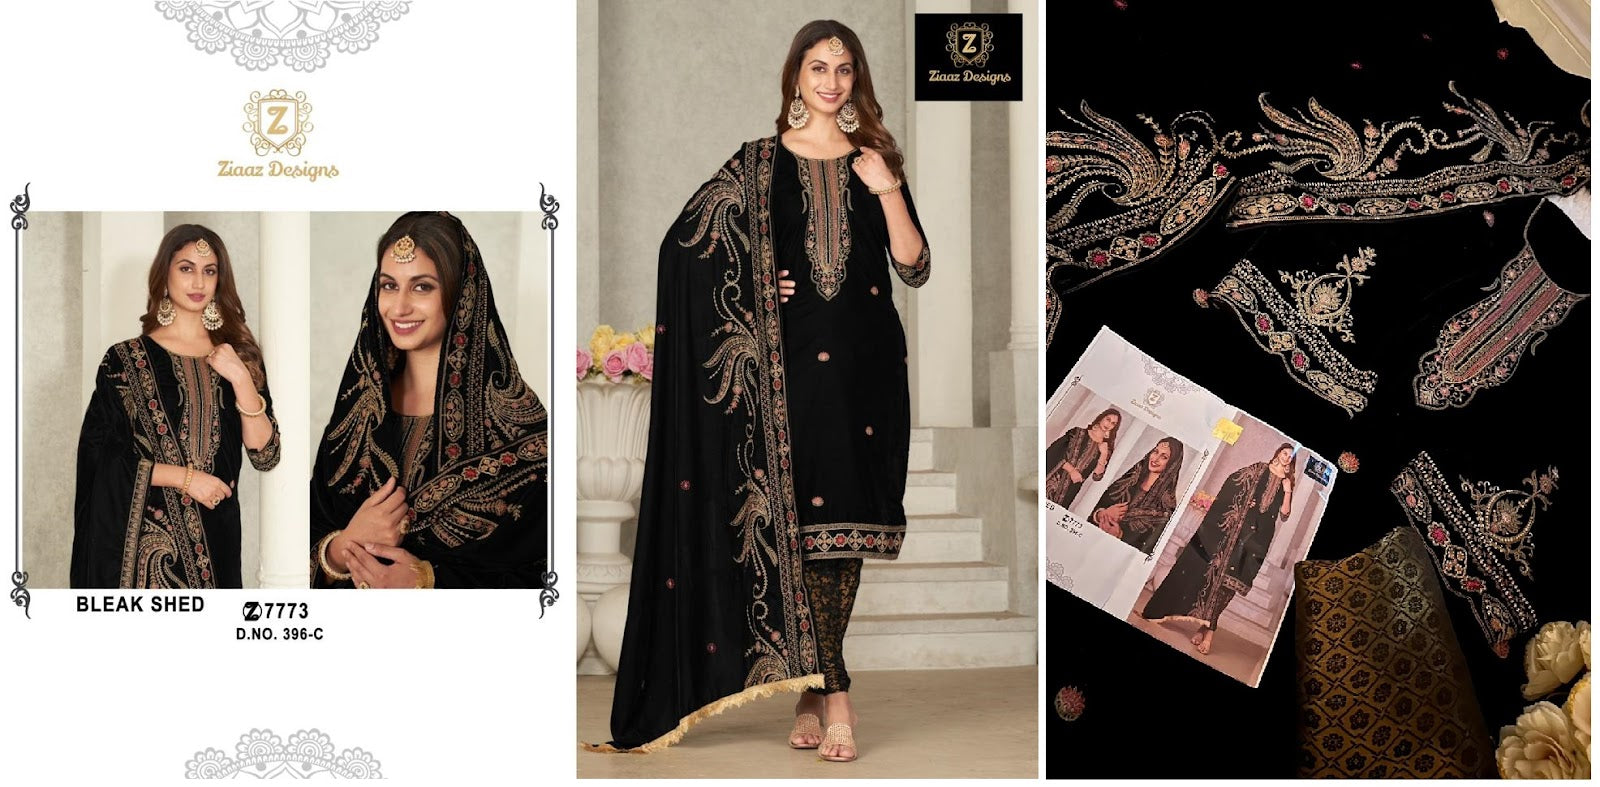 396 Ziaaz Designs Velvet Suits